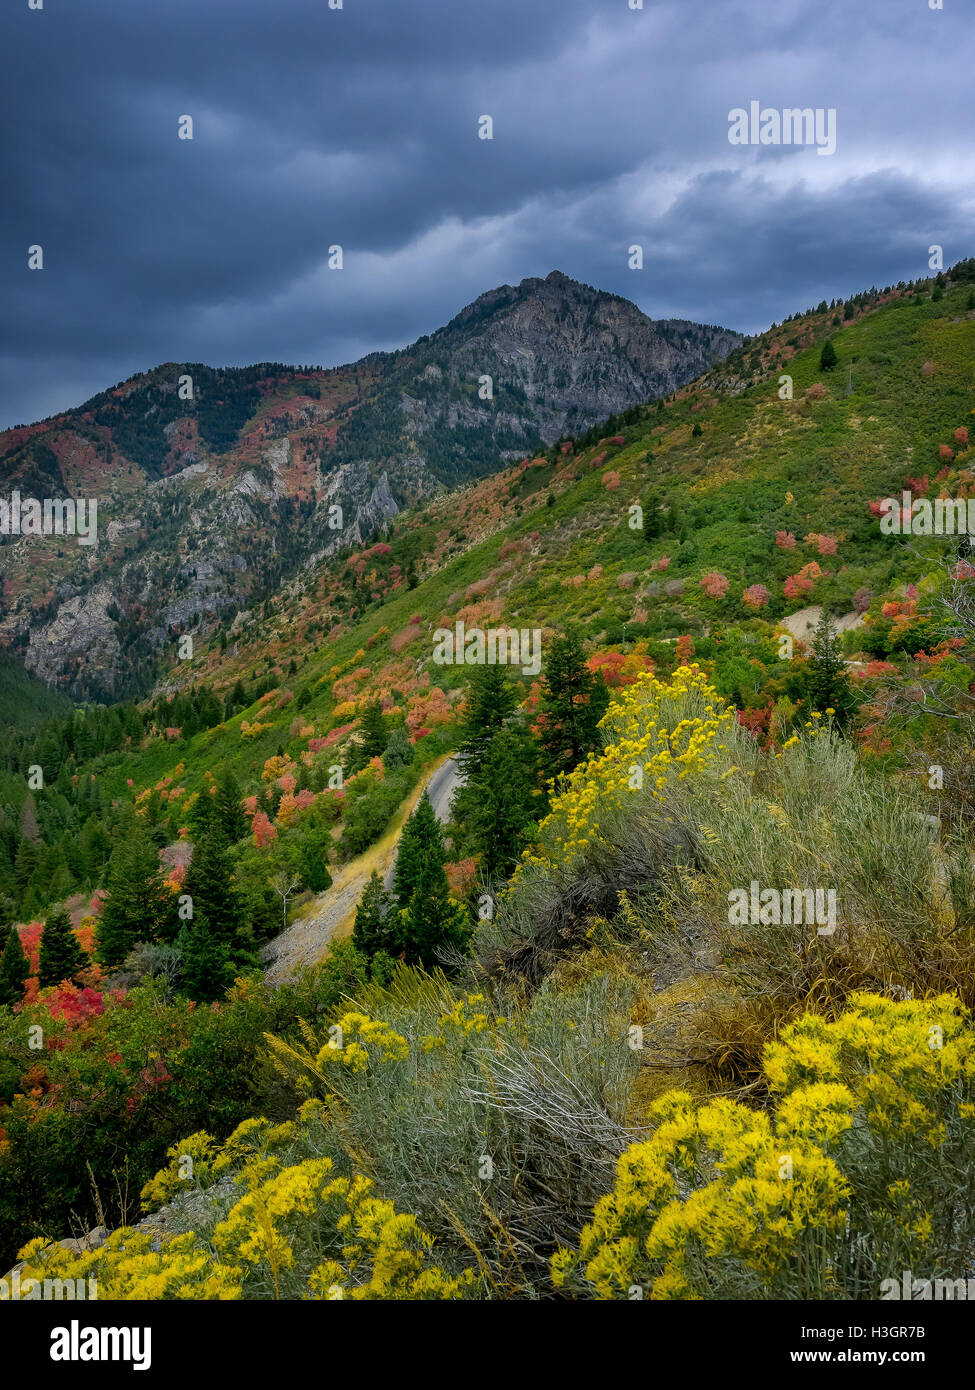 Farben des Herbstes beginnen, der Bergseite American Fork Canyon zu punktieren. Stockfoto